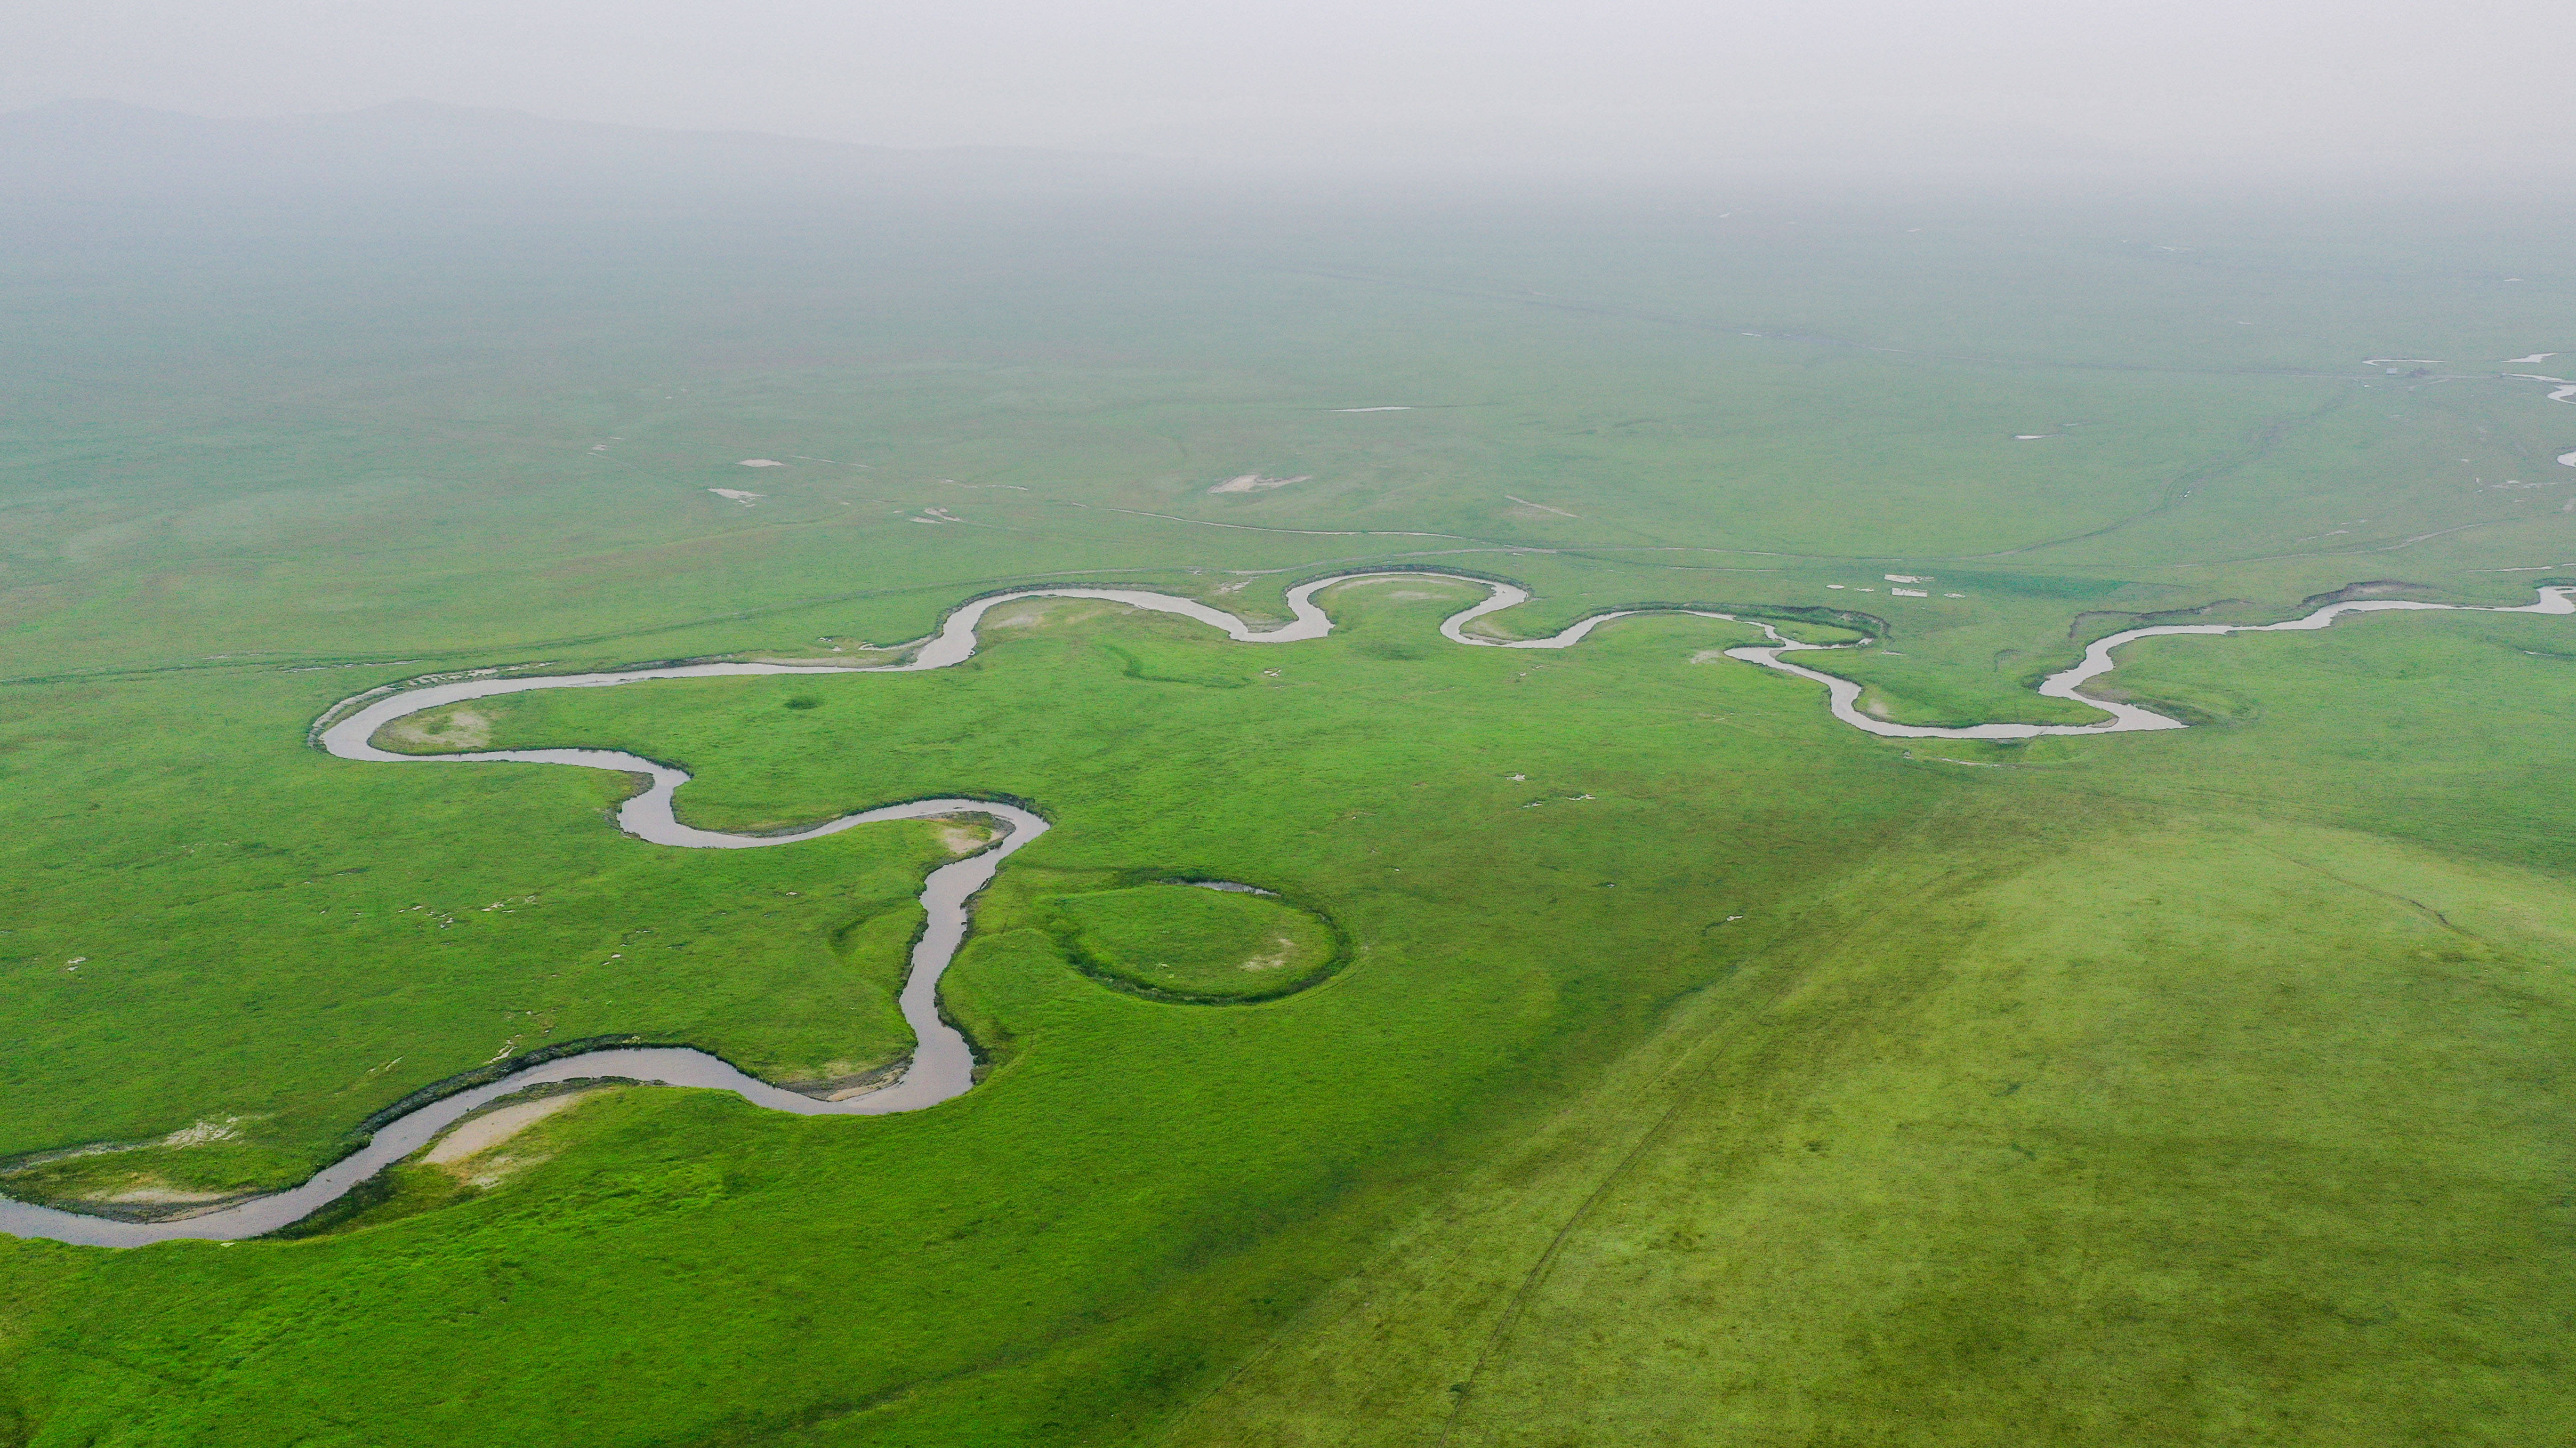 盛夏时节,内蒙古锡林郭勒盟东乌珠穆沁旗草原水草丰美,乃林河流淌其间